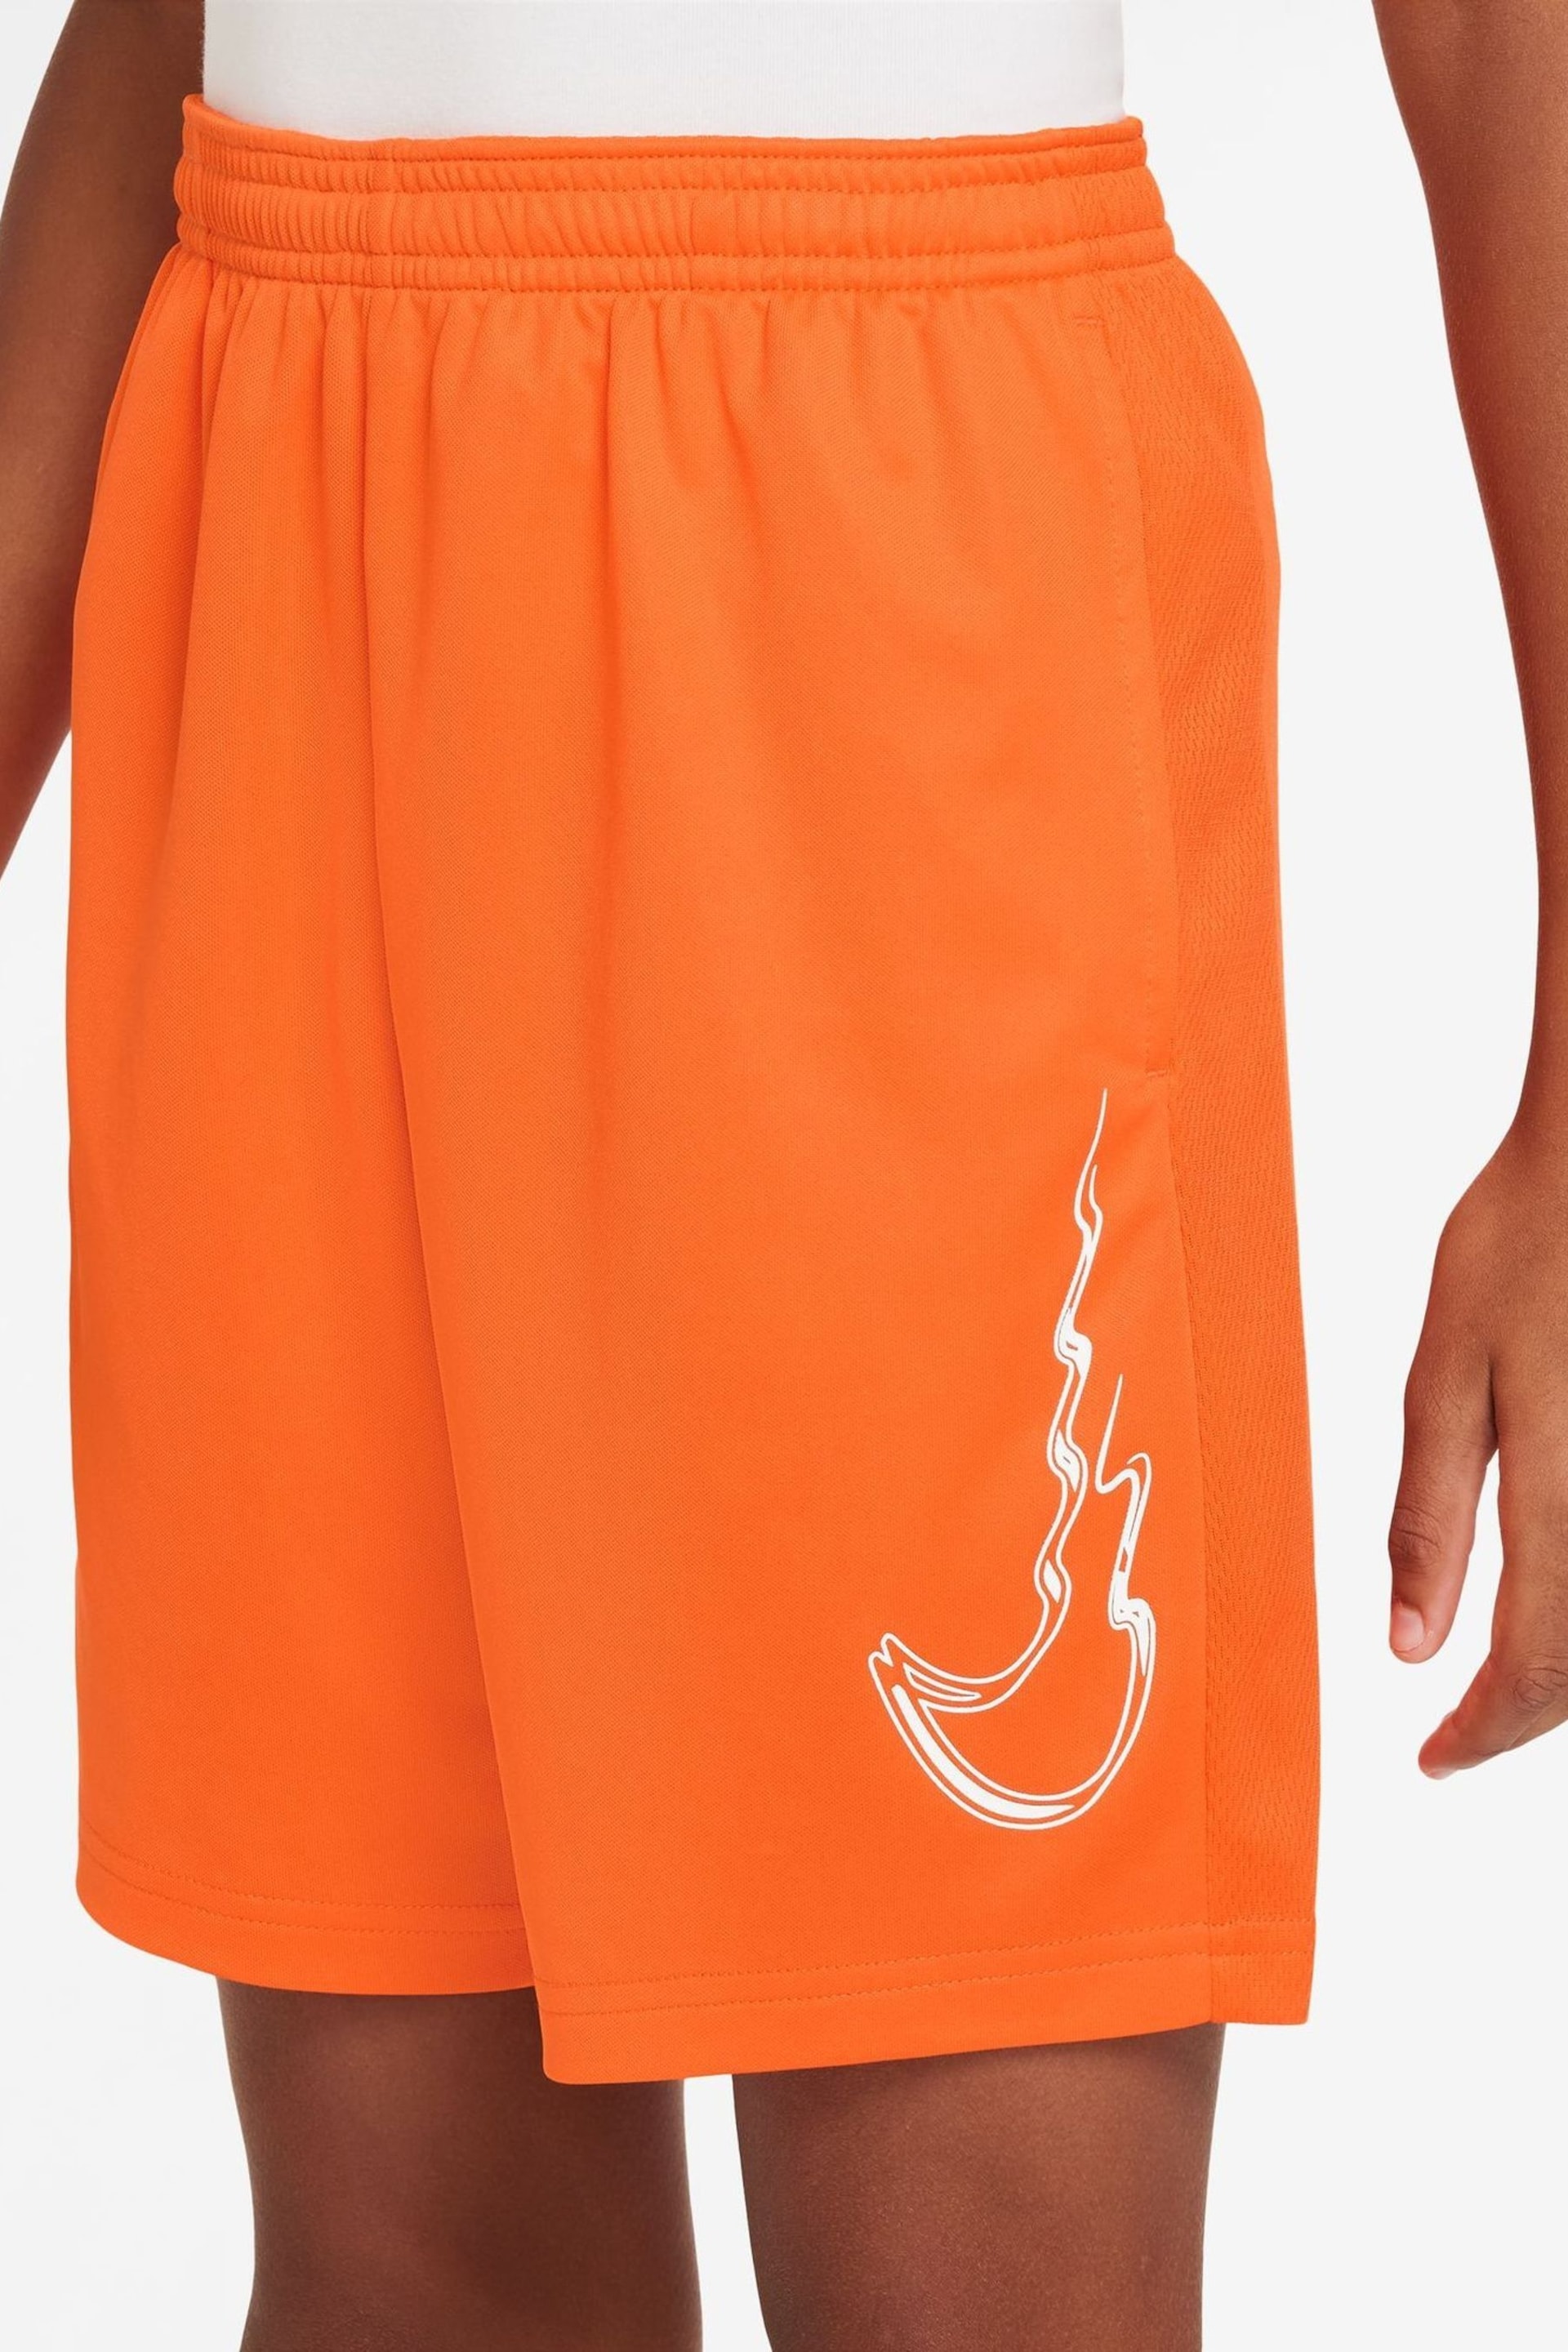 Nike Orange Trophy Dri-FIT Shorts - Image 3 of 4